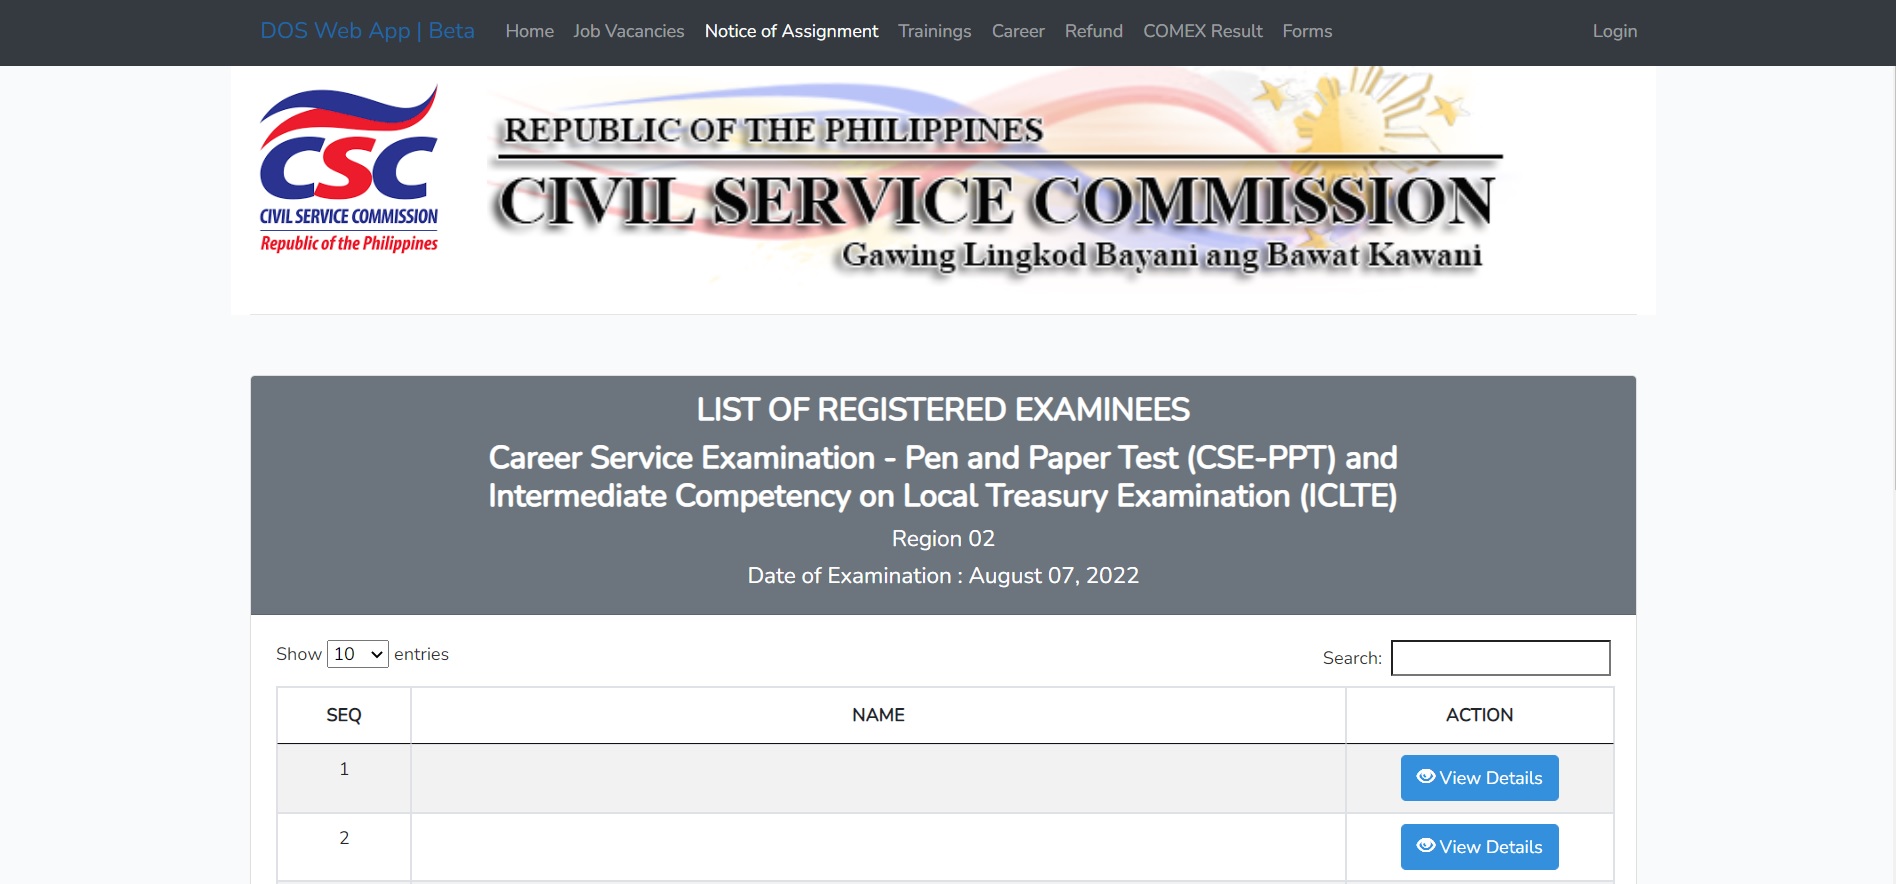 online notice of school assignment csc 2023